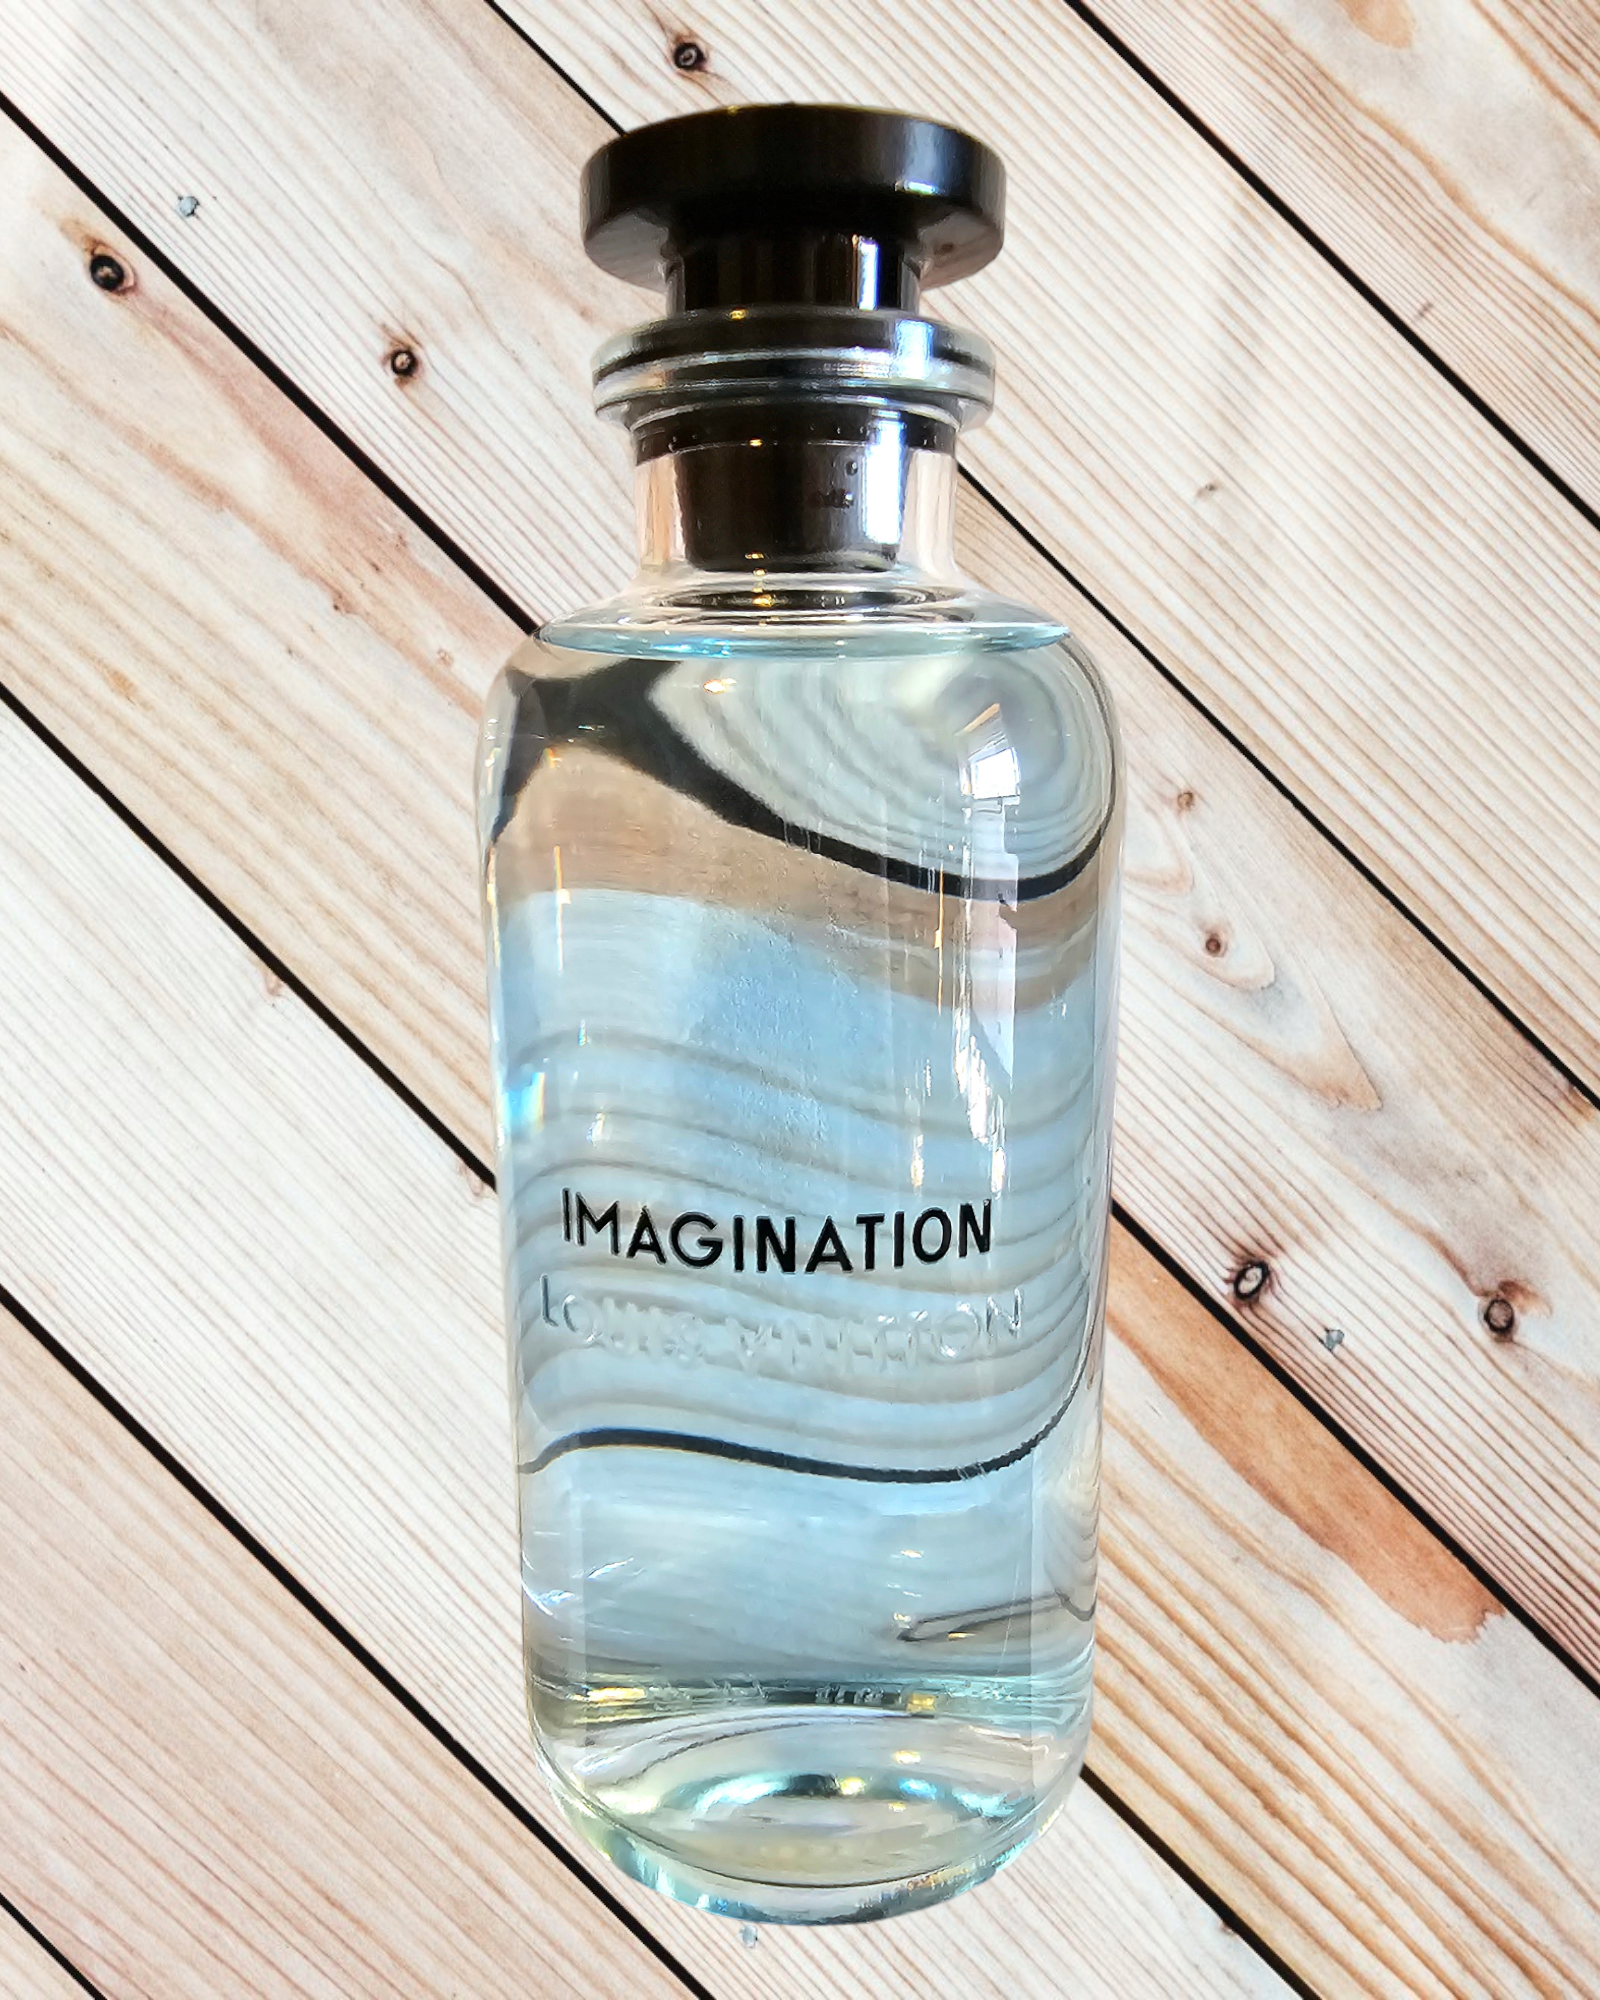 imagination louis vuitton fragrance